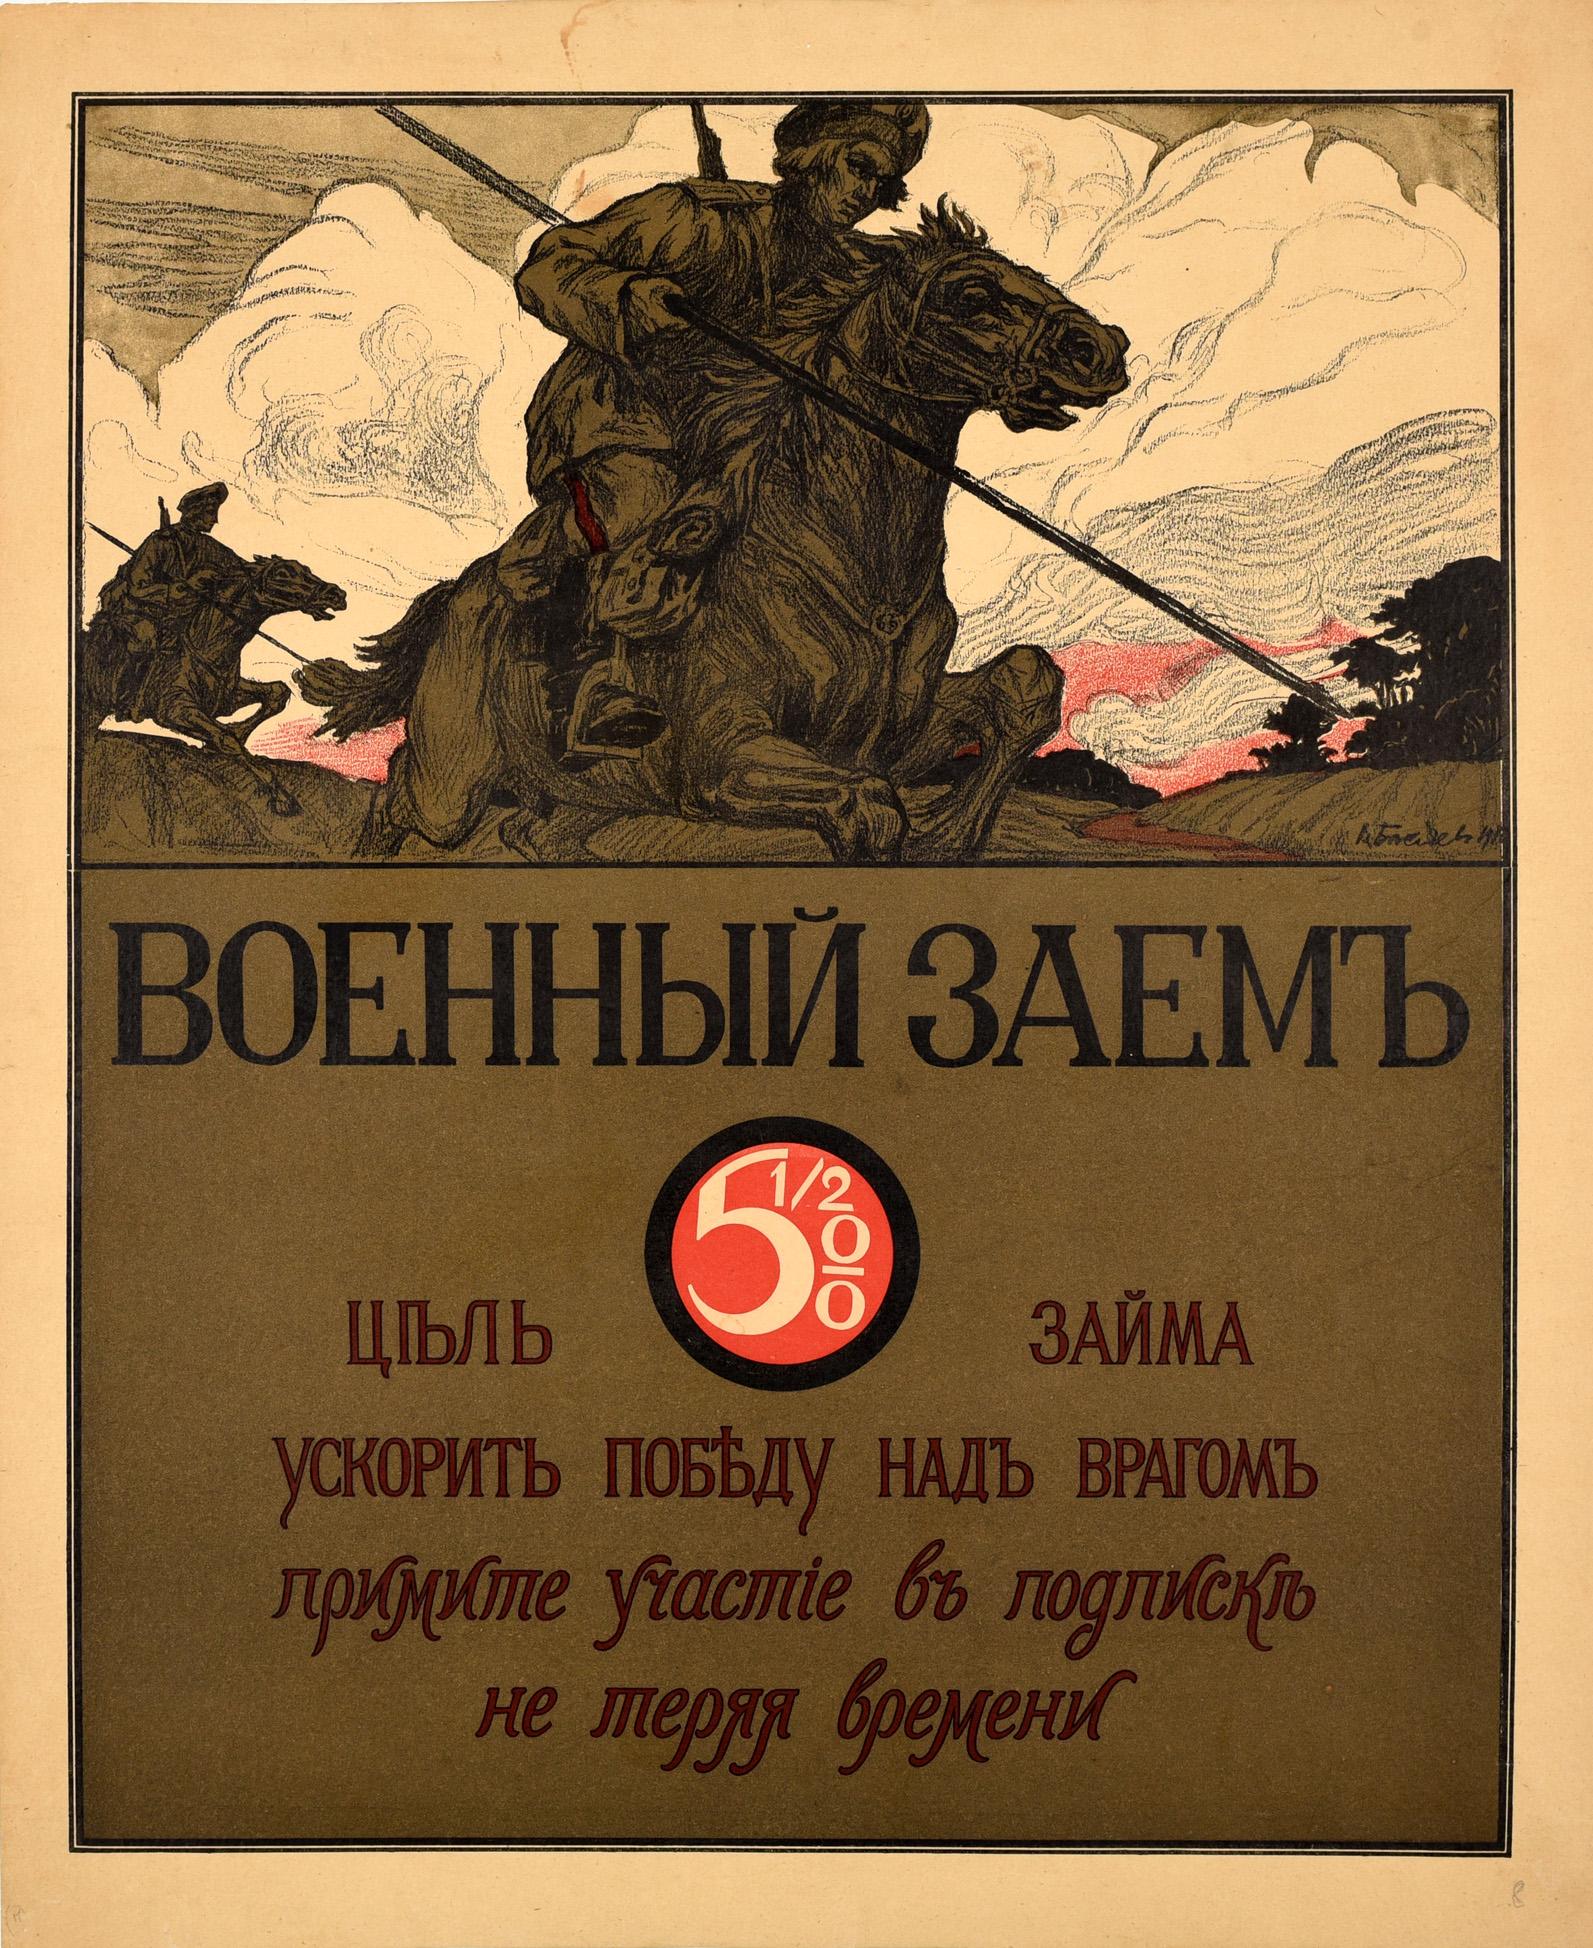 V Basyaev Print – Original Antikes Poster, WWI-Kriegsanleihe für den Sieg, russische Kossack-Kavallerie, Soldat